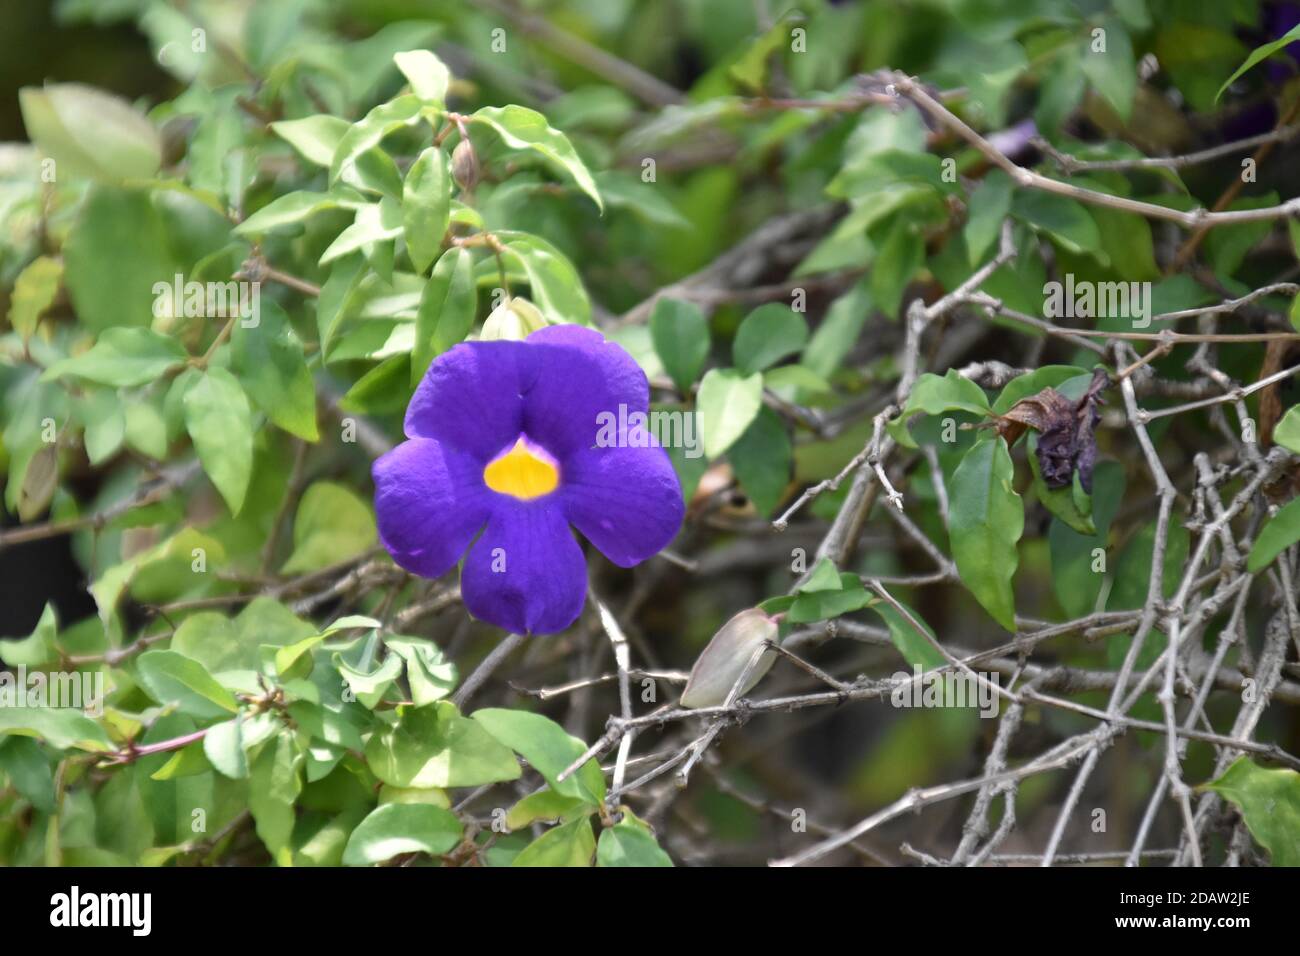 beautiful blue allamanda flower Stock Photo